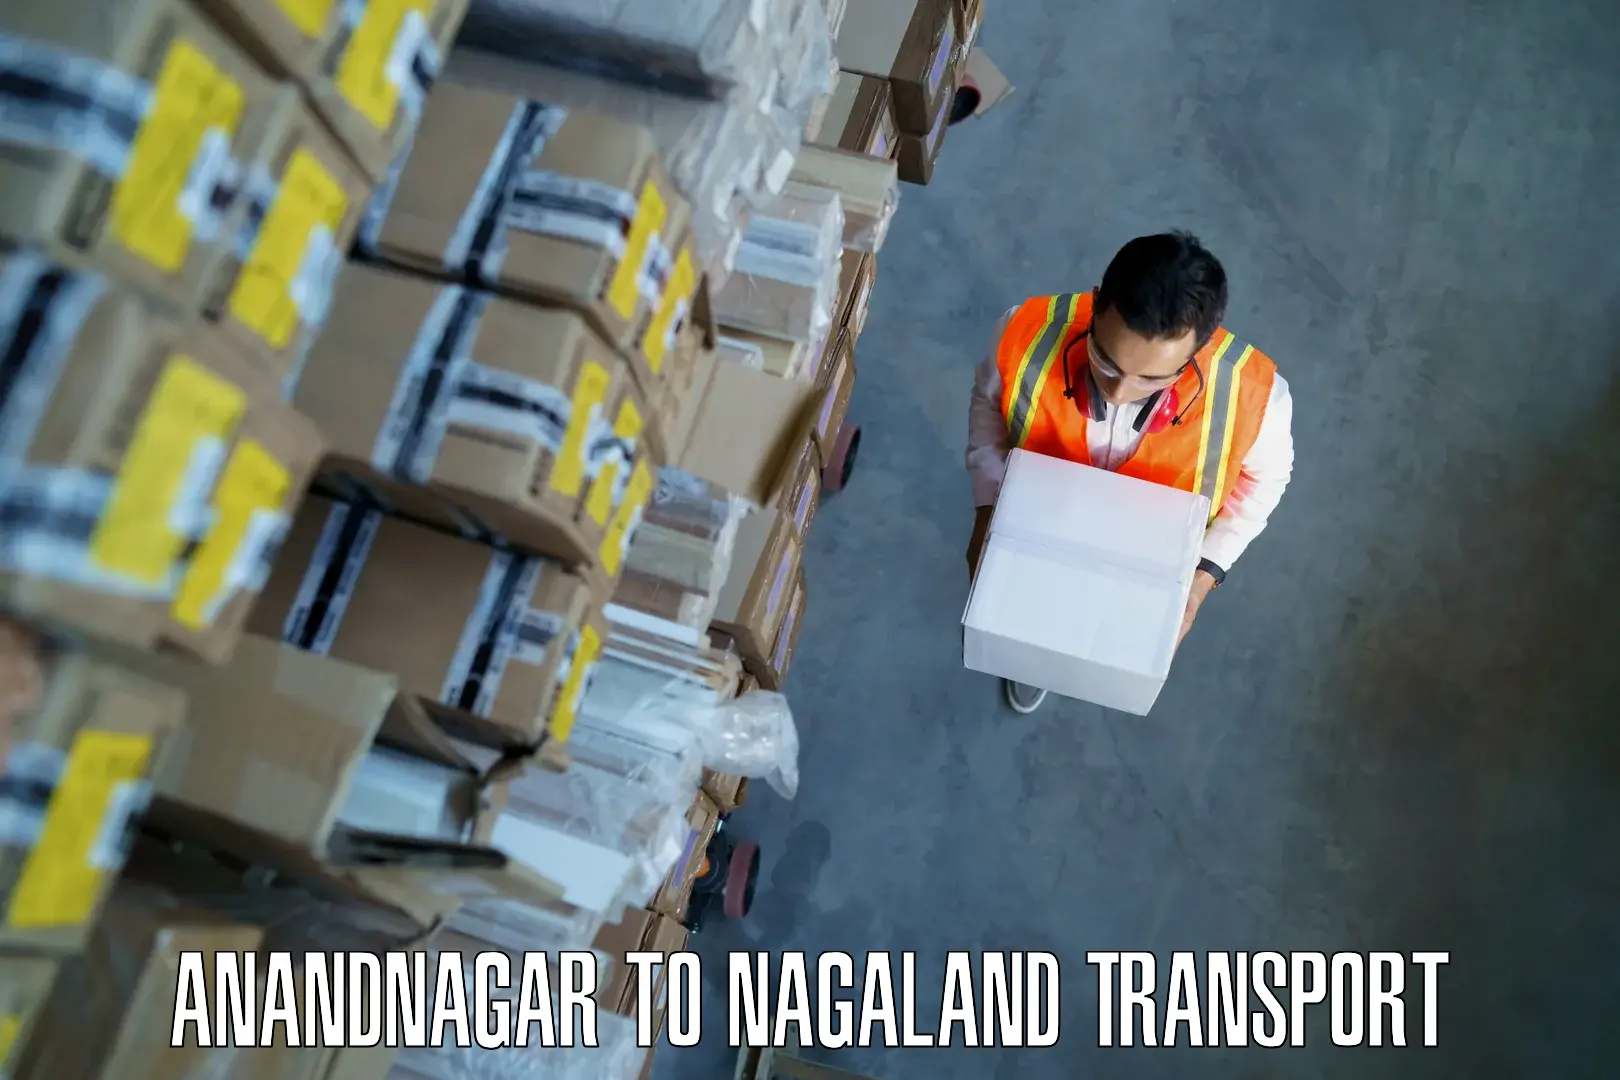 Transportation services Anandnagar to Nagaland